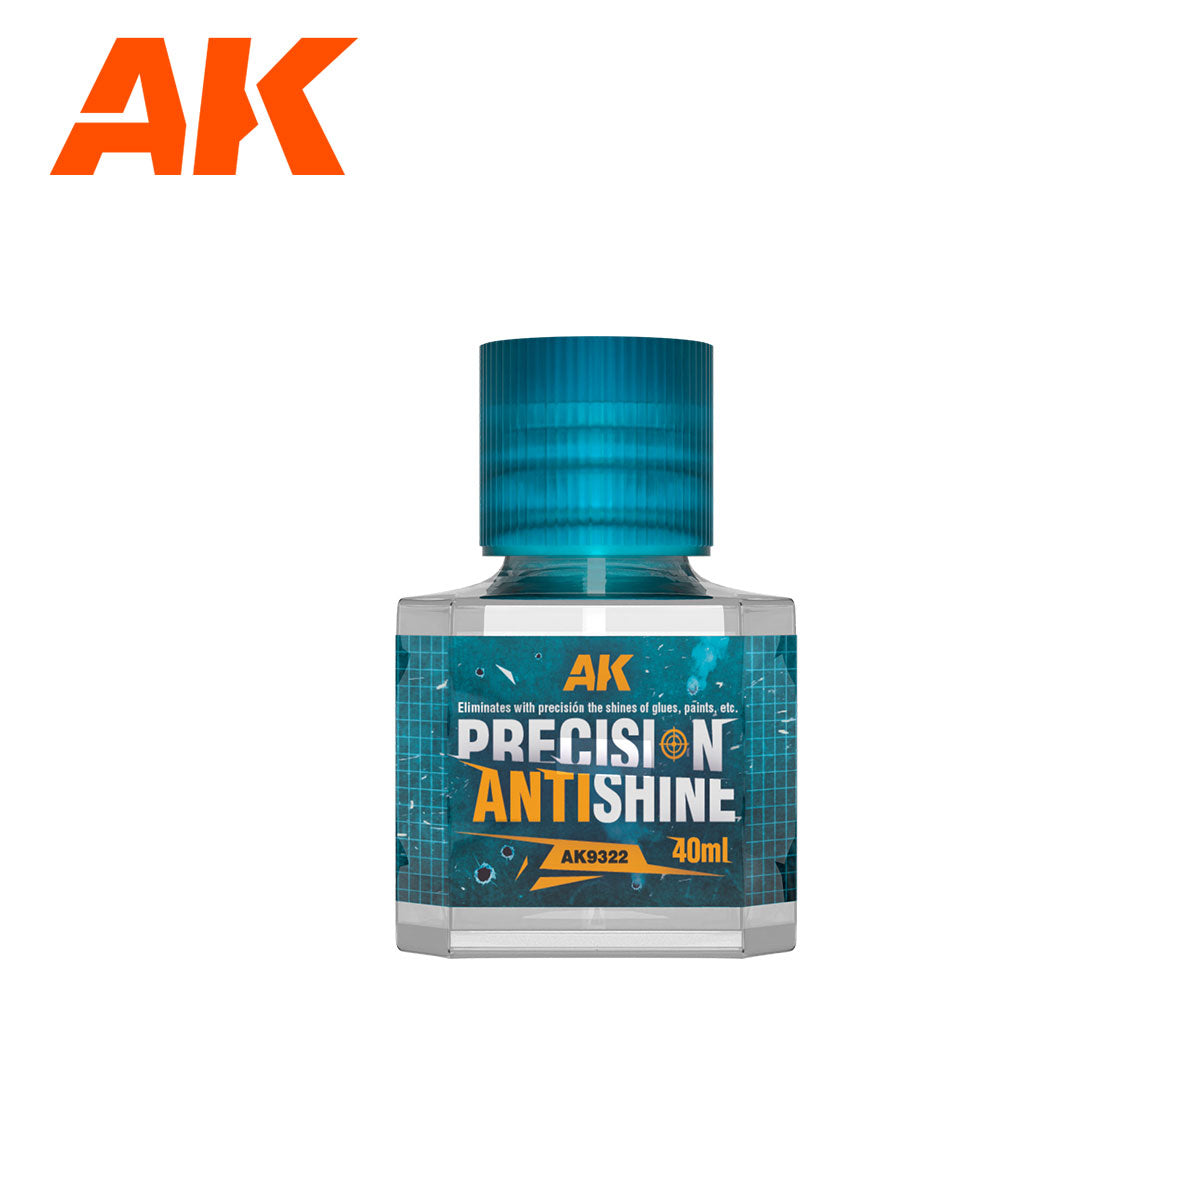 AK9322 - Precision Antishine - 40ml